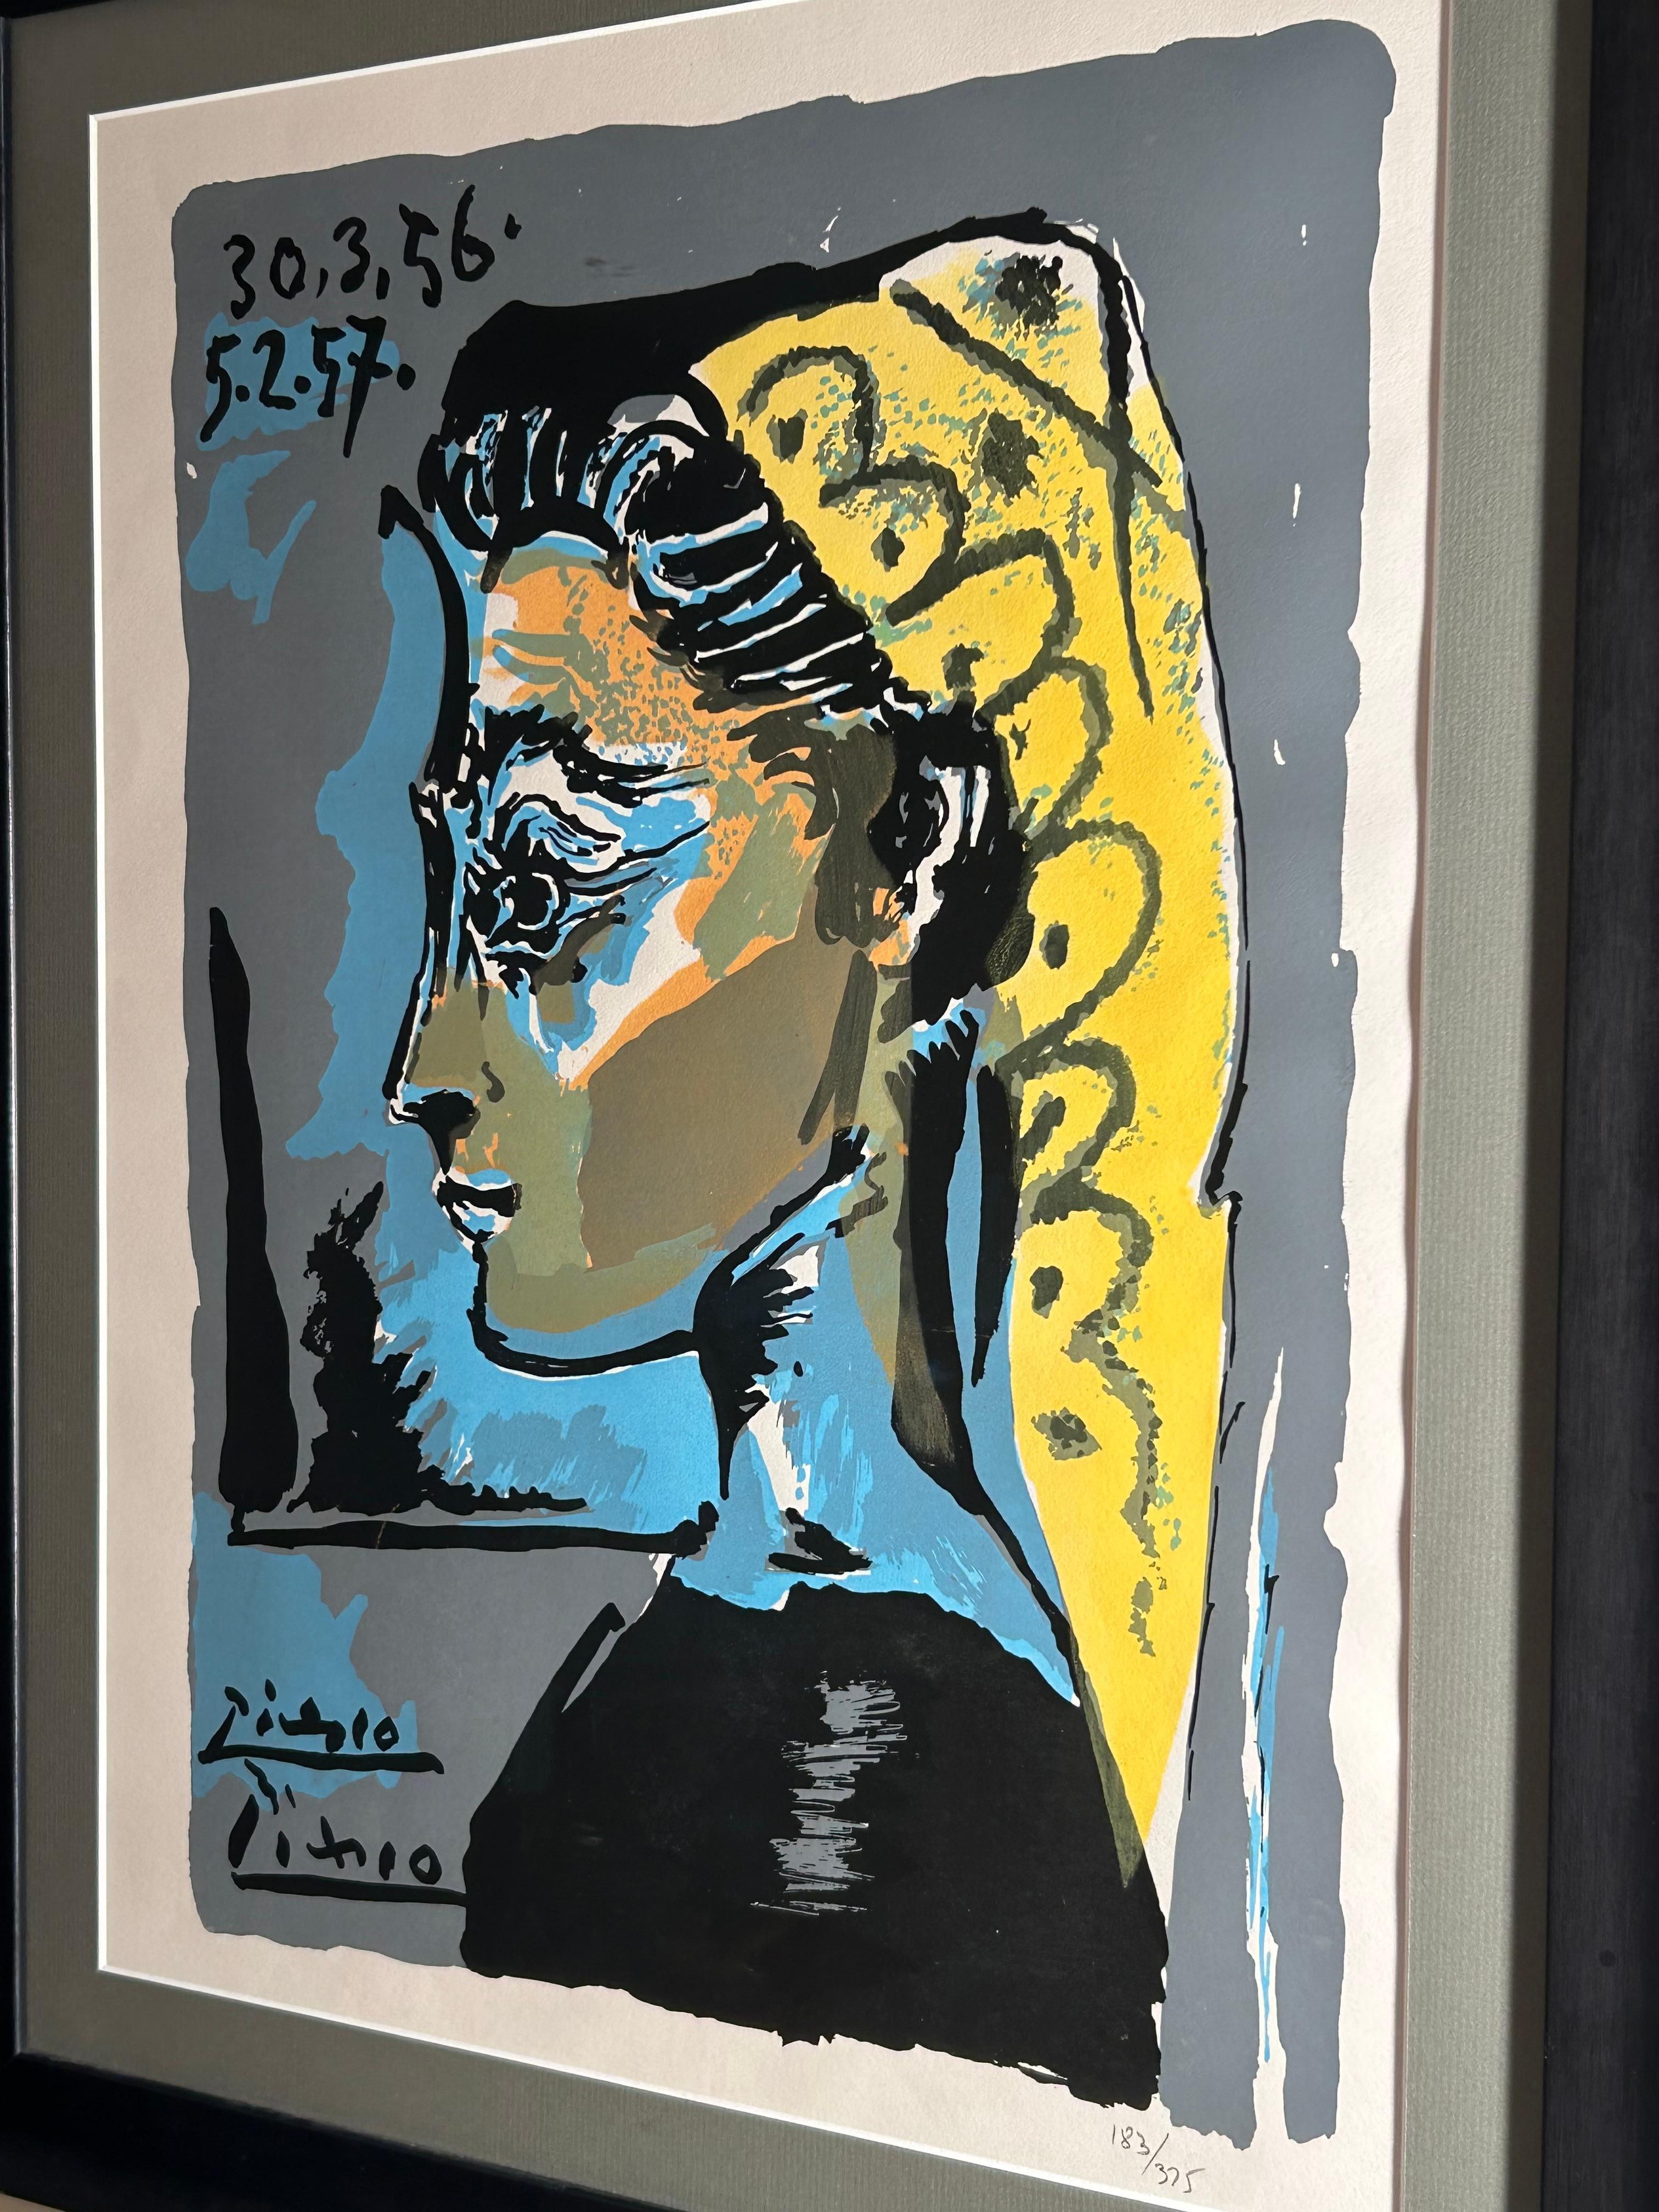 Ein schönes Bild von Pablo Picasso von seiner letzten Muse Jacqueline Roque mit Passepartout-Rahmen.
Handnummeriert 183/375 als Teil der limitierten Serie von Lithographien.
Abmessungen der Lithographie: 21.5